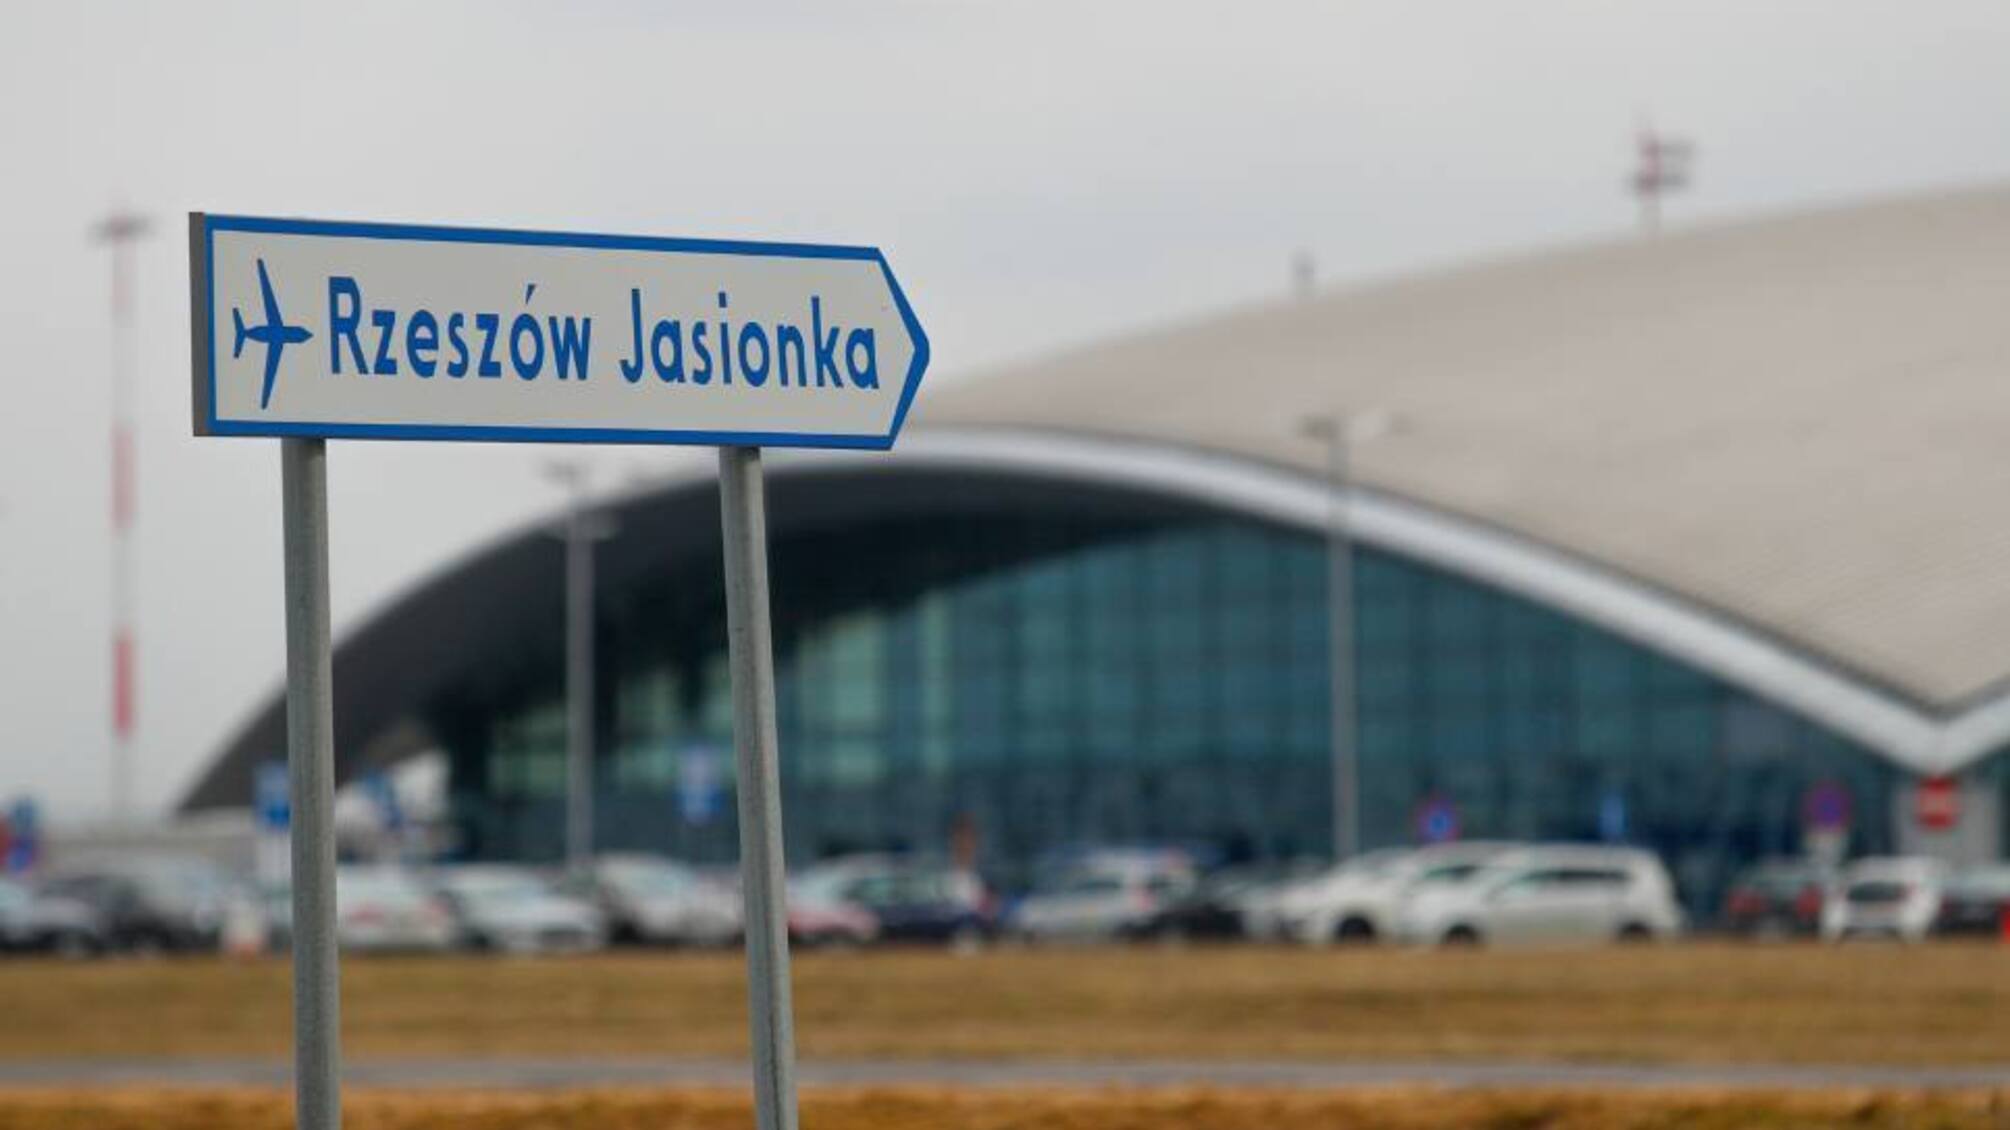 Шпигували за вантажами для ЗСУ: в аеропорті Жешува затримали російських агентів, – польські ЗМІ